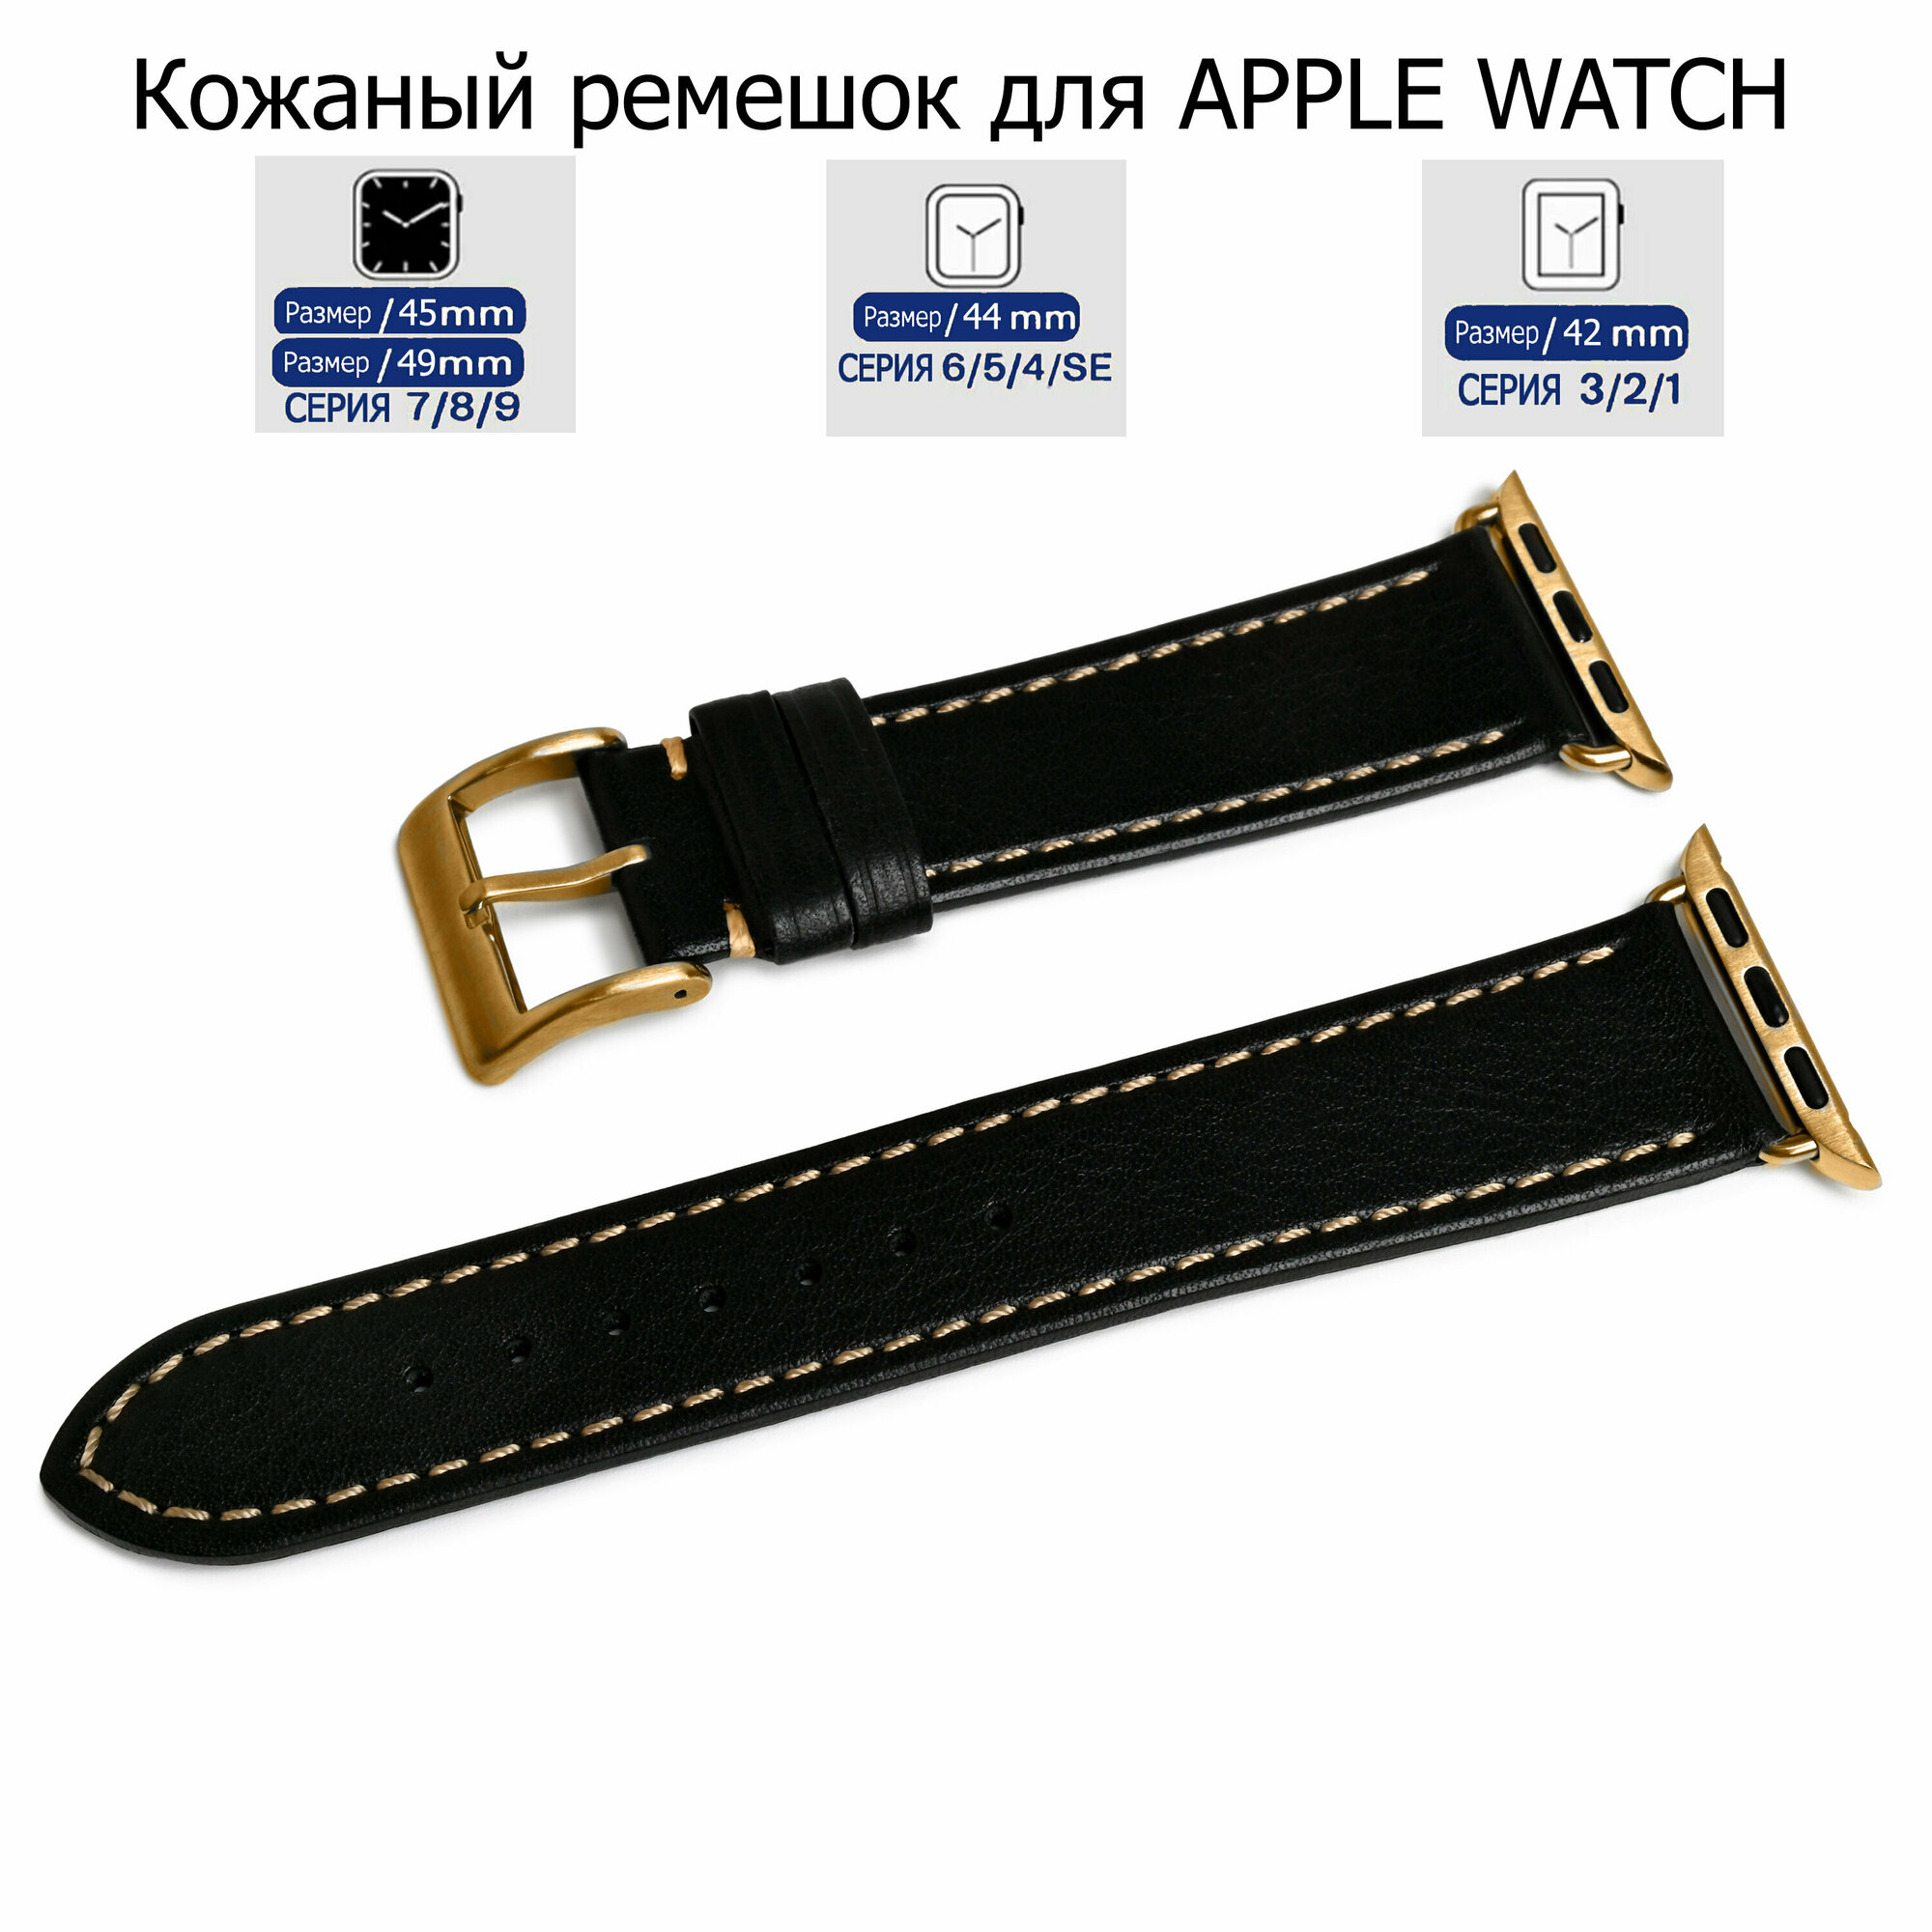 Ремешок для Apple Watch с диагональю 42/44/45/49 натуральная кожа черный, серая нитка, переходник золотого цвета